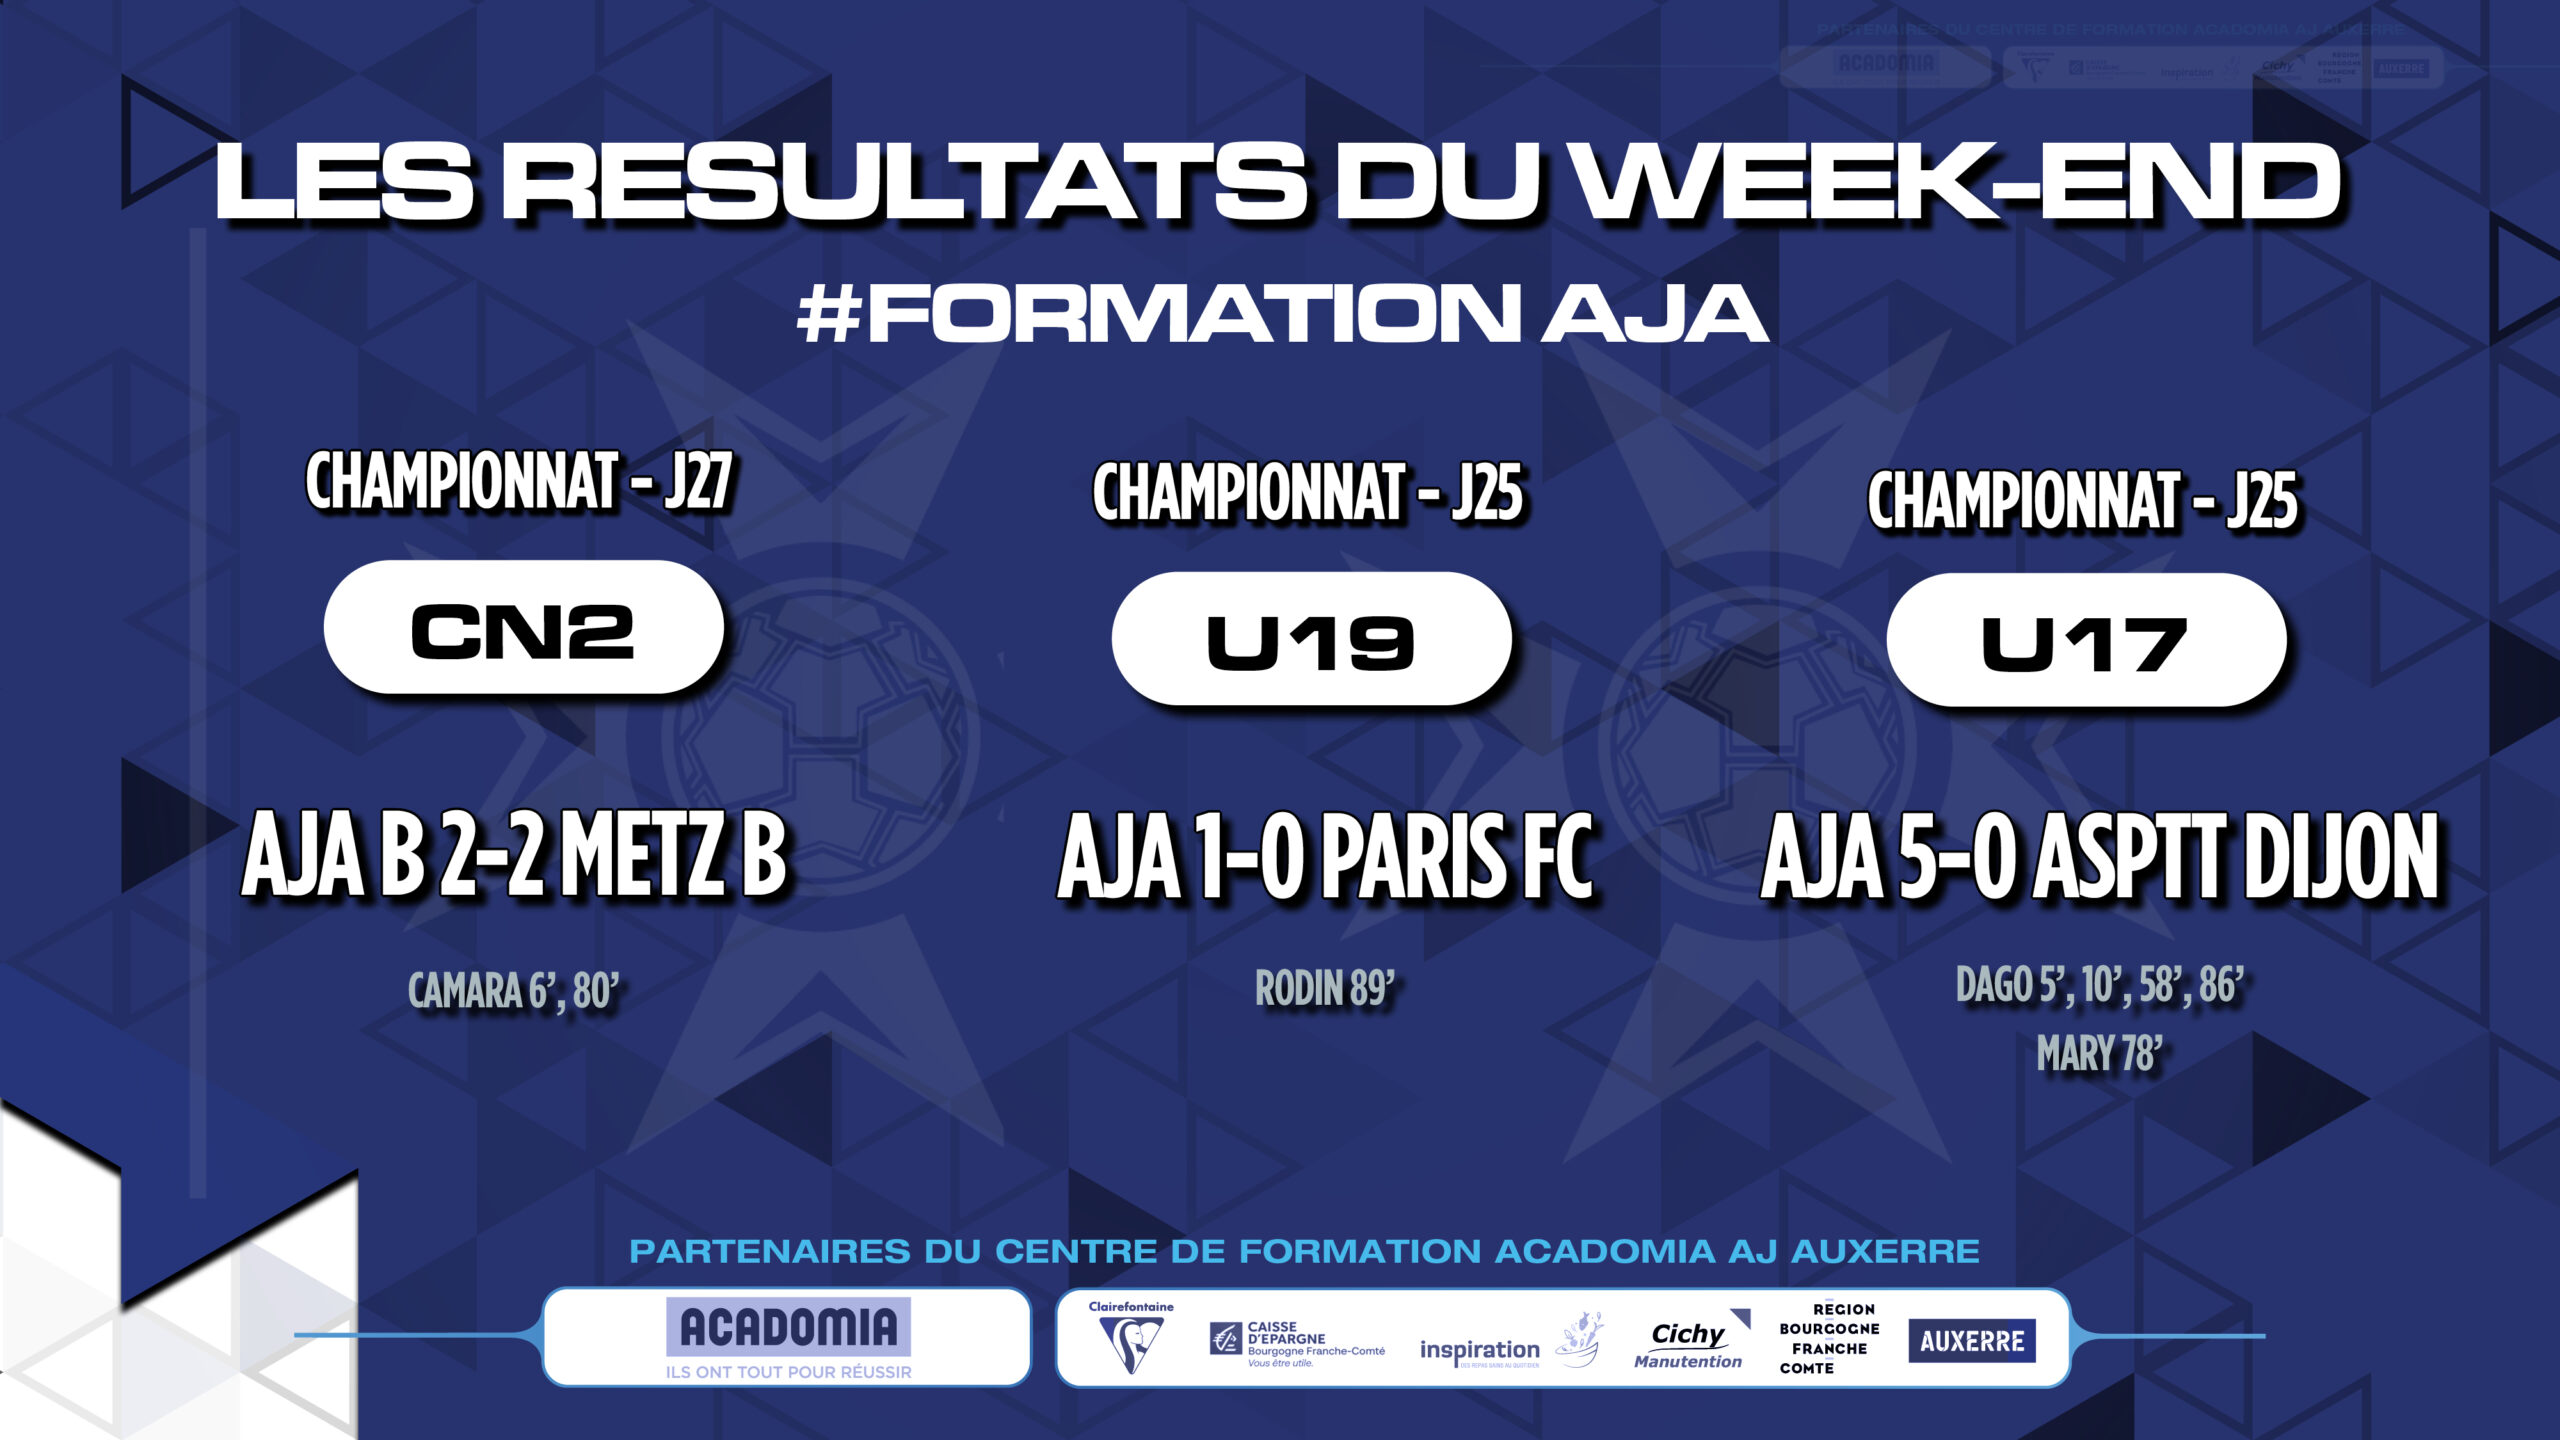 Les résultats du week-end pour la Formation AJA (week-end du 30 avril - 1er mai)